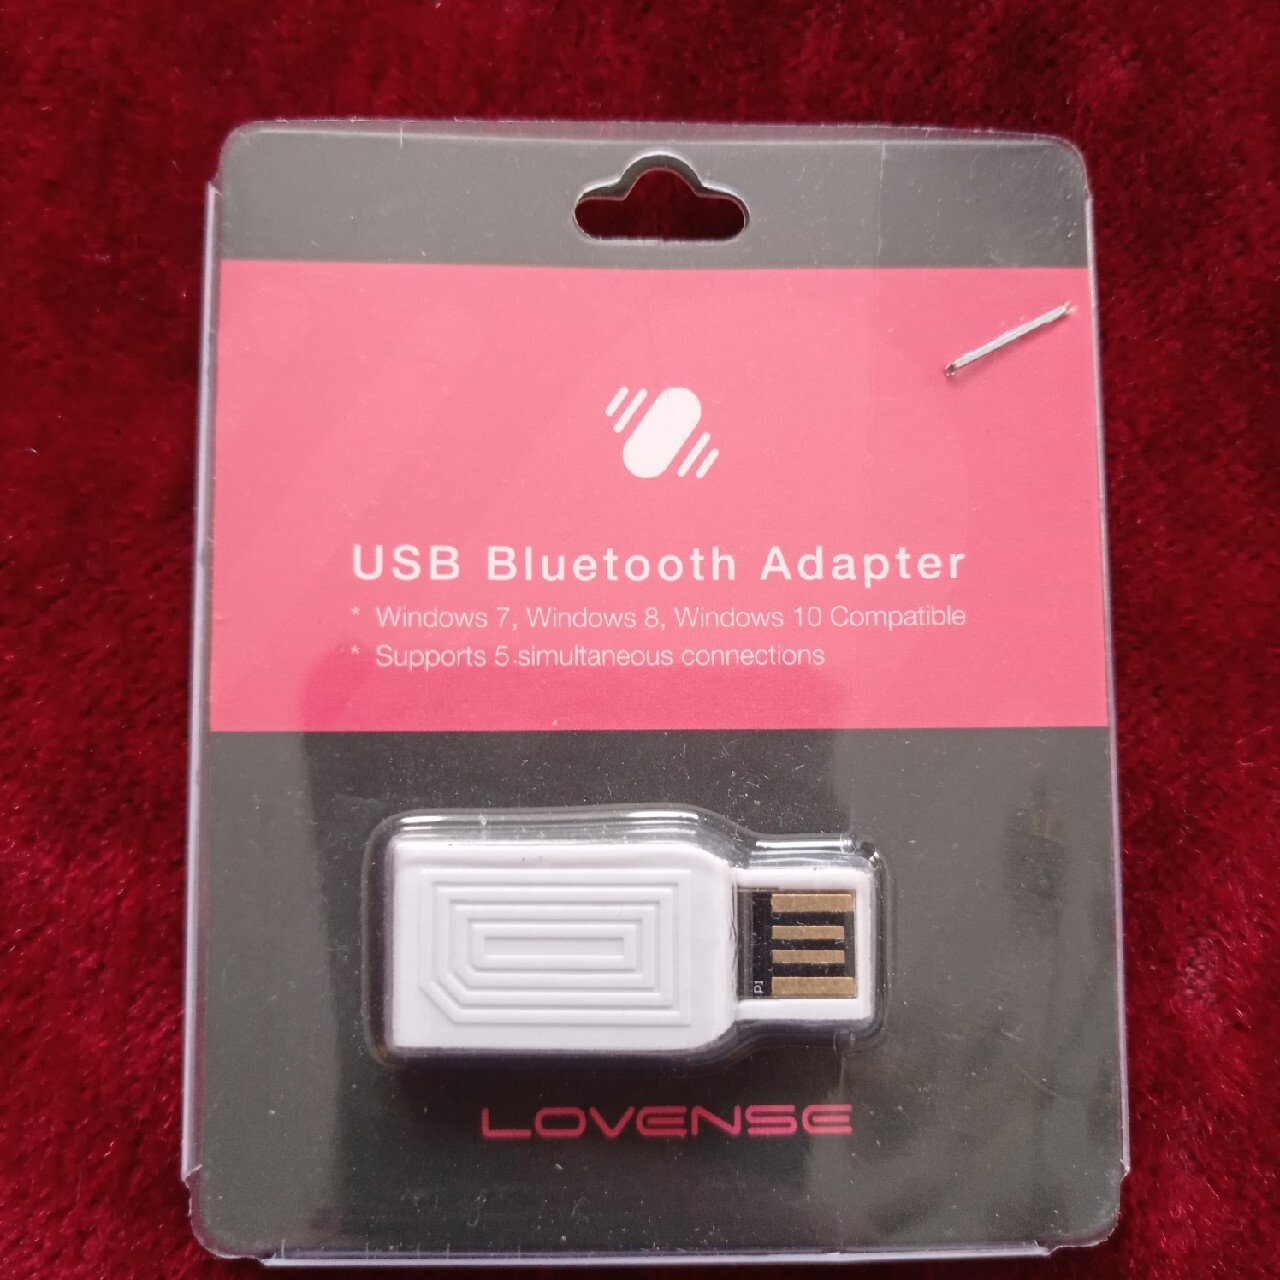 USB adapter wibratorów | Krzywe | Kup teraz na Allegro Lokalnie